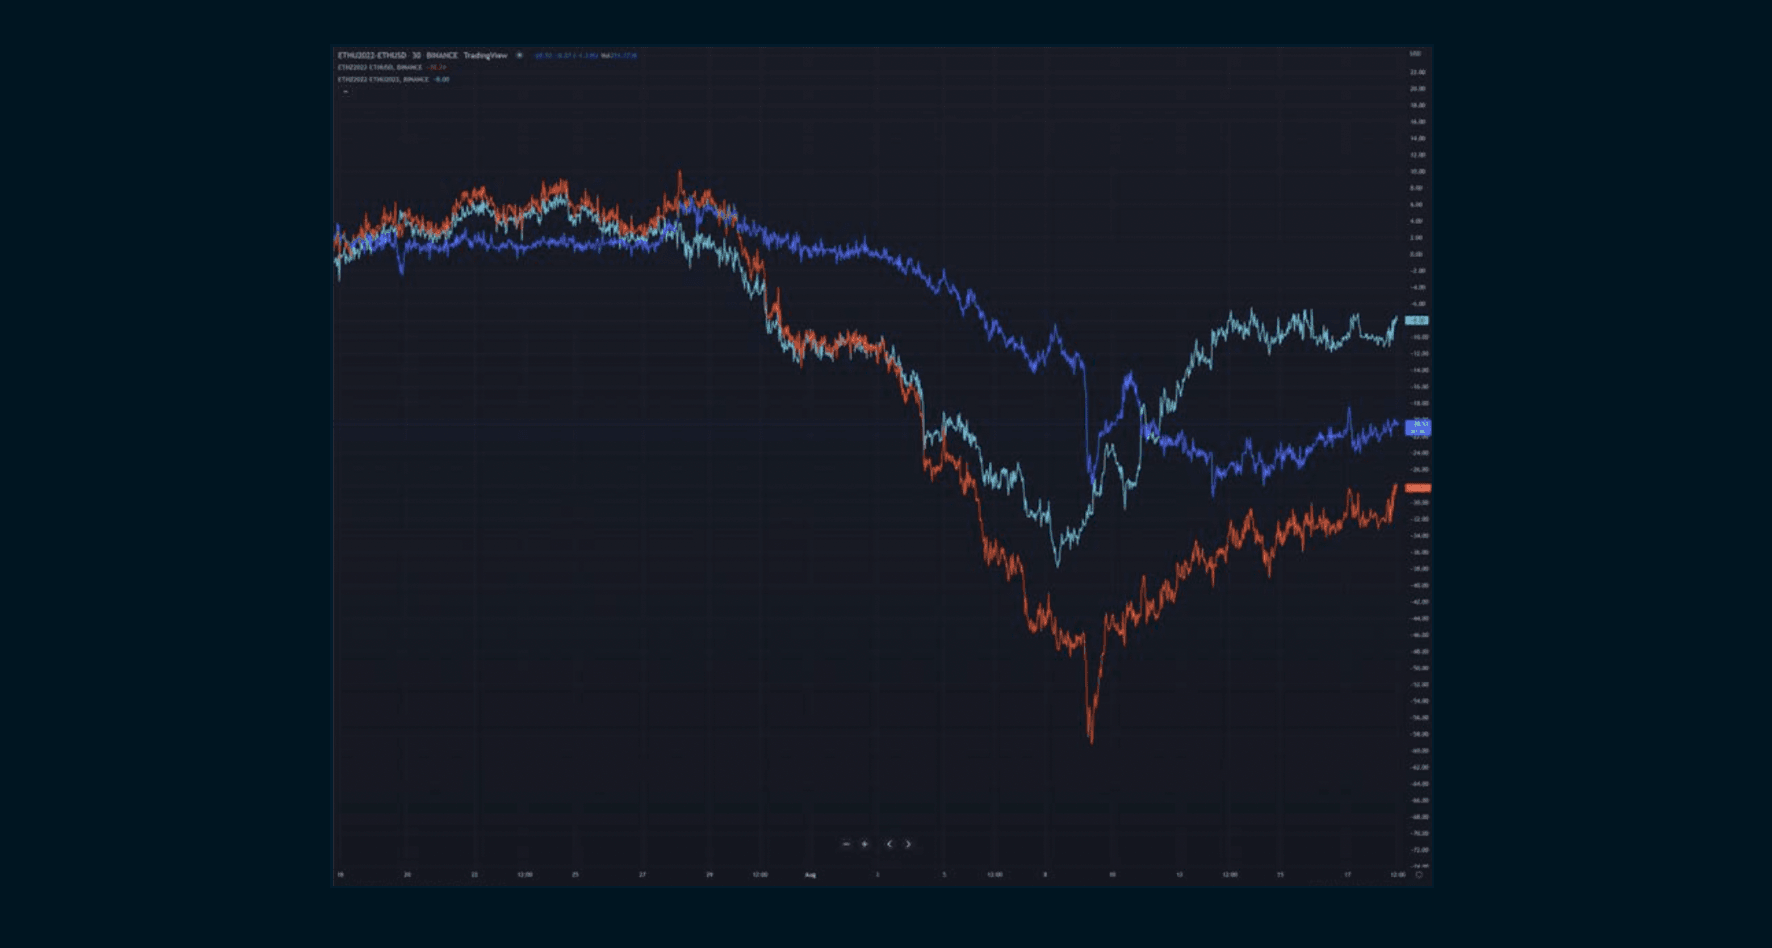 Red Graph: December-spot Blue Graph: September-spot Teal Graph: December-September